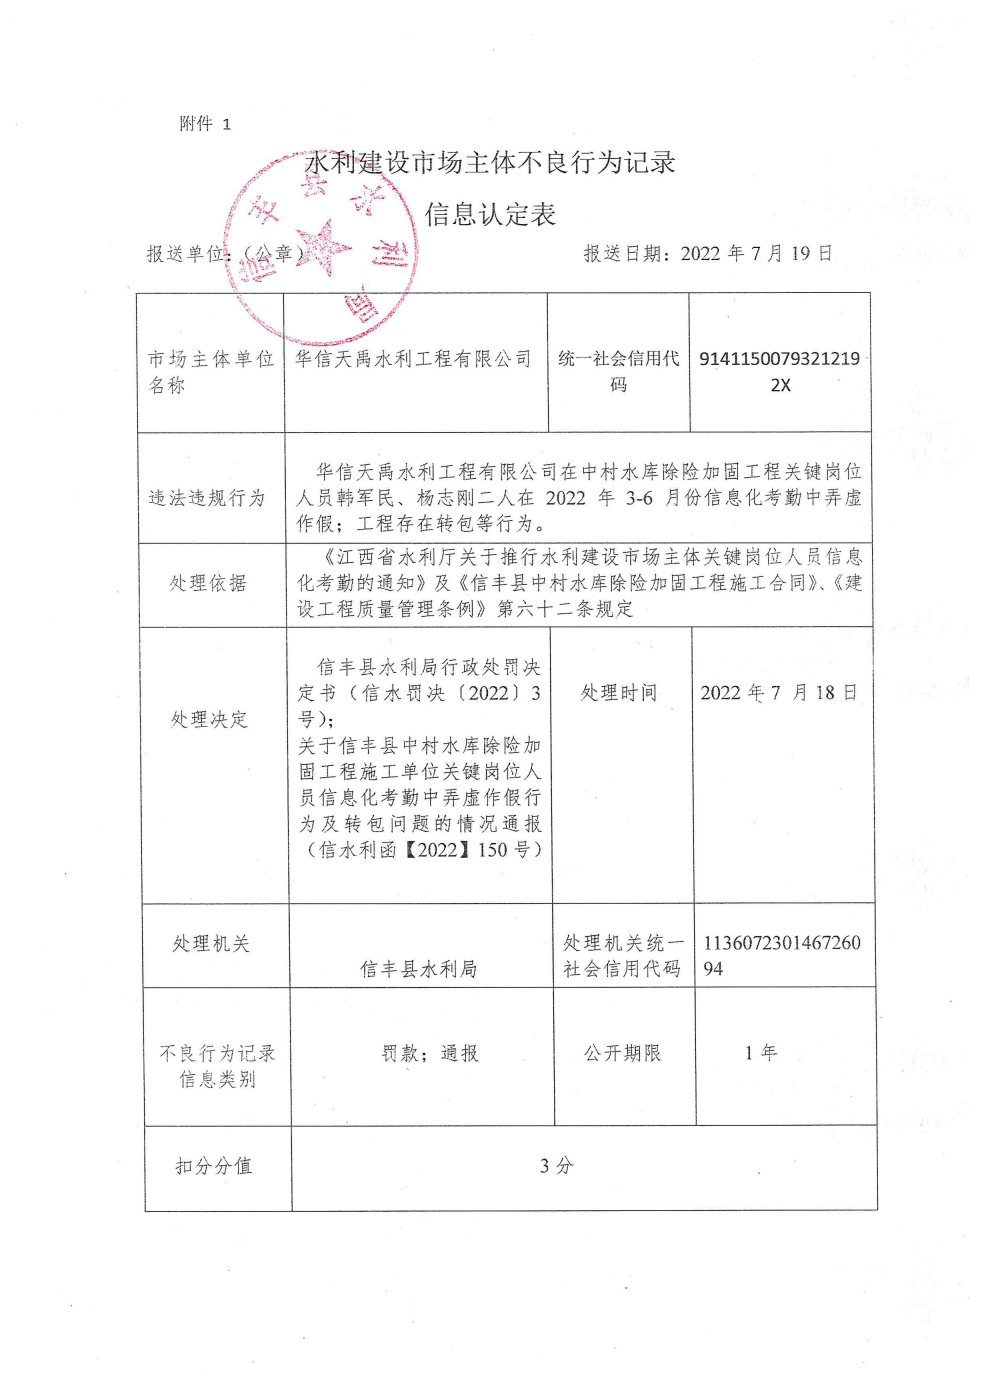 江西省水利厅关于报送华信天禹水利工程有限公司不良行为记录信息的函3.png